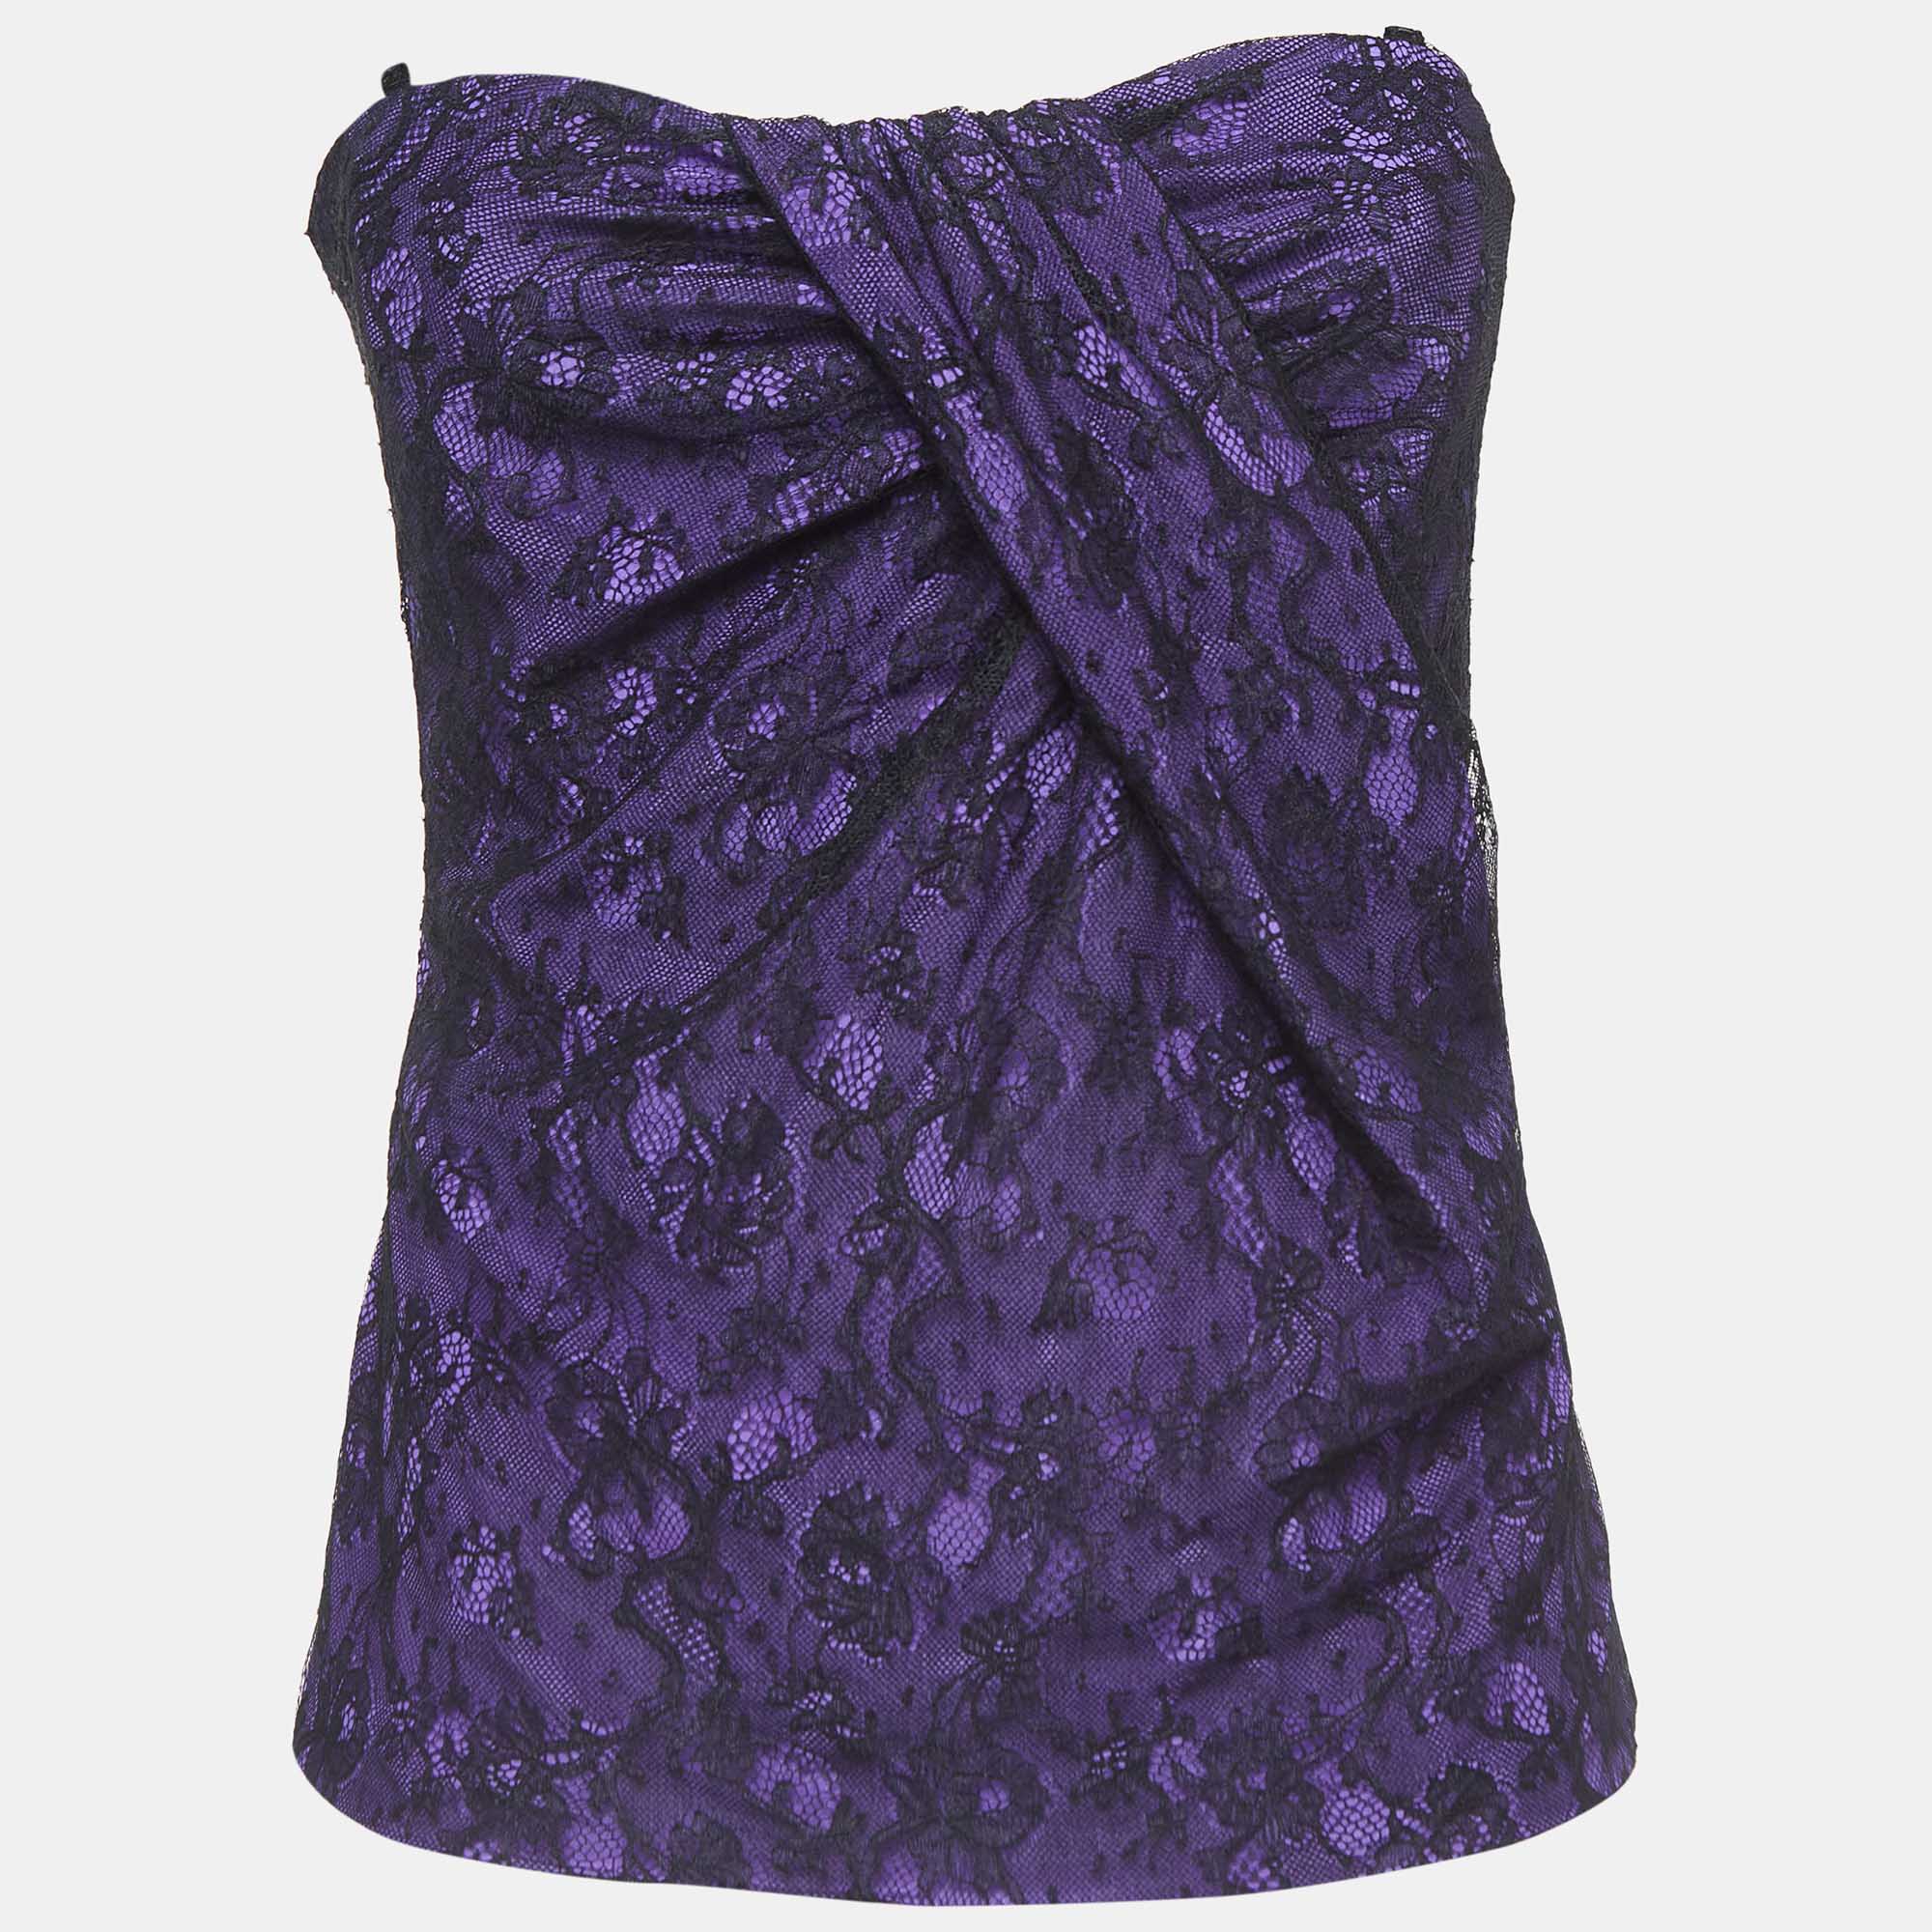 D&g purple lace corset tube bustier m